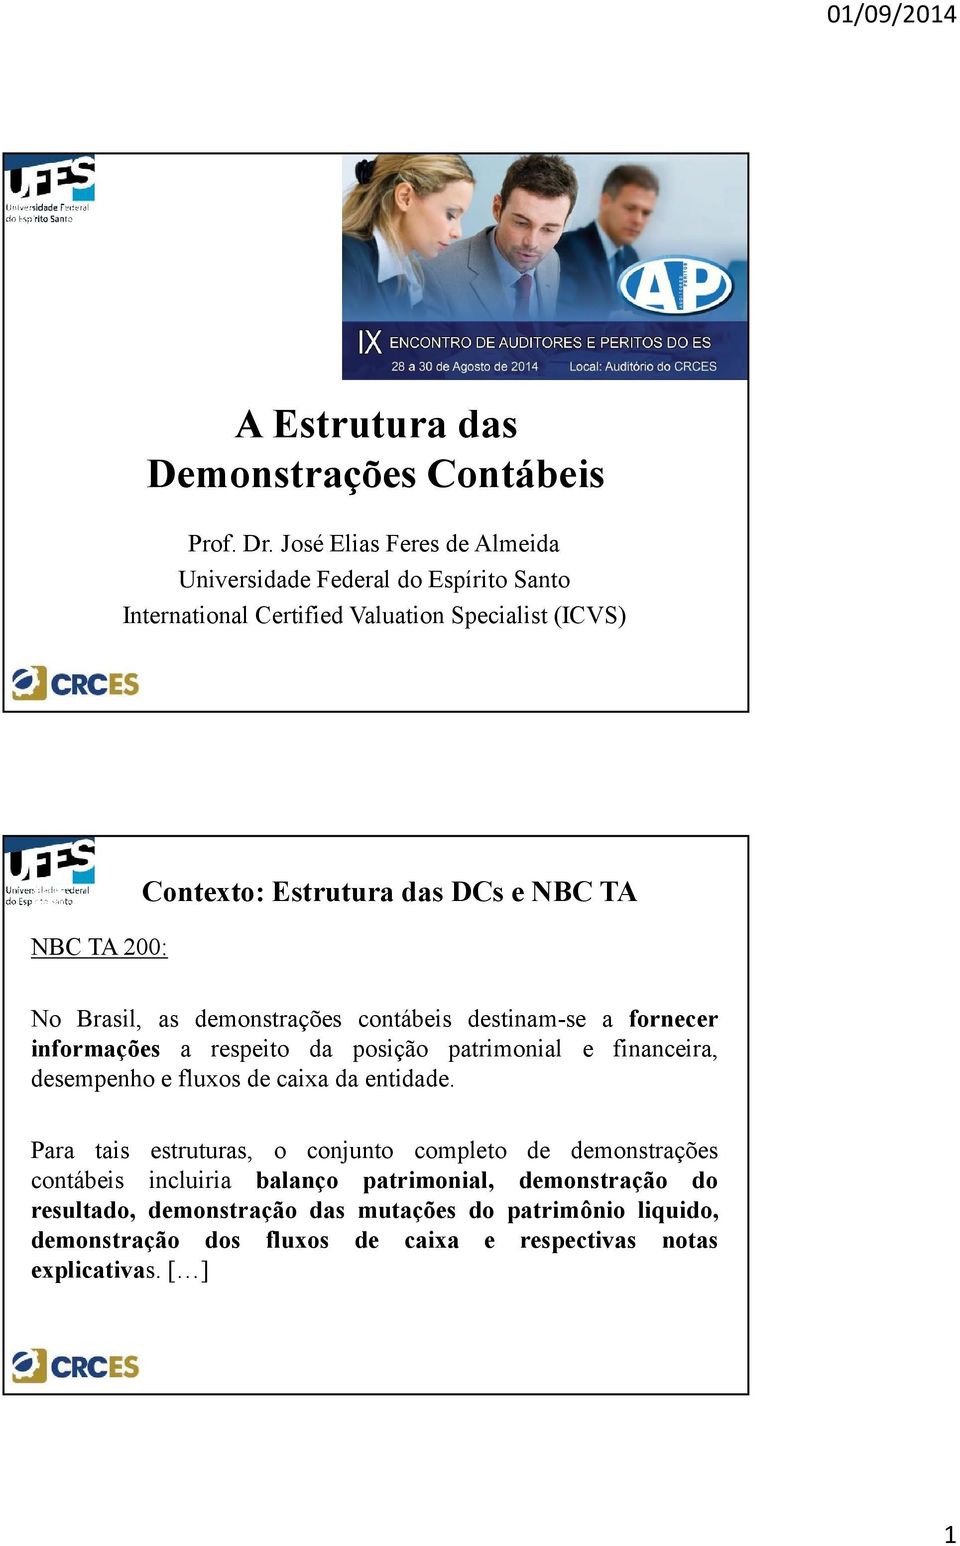 DCs e NBC TA No Brasil, as demonstrações contábeis destinam-se a fornecer informações a respeito da posição patrimonial e financeira, desempenho e fluxos de